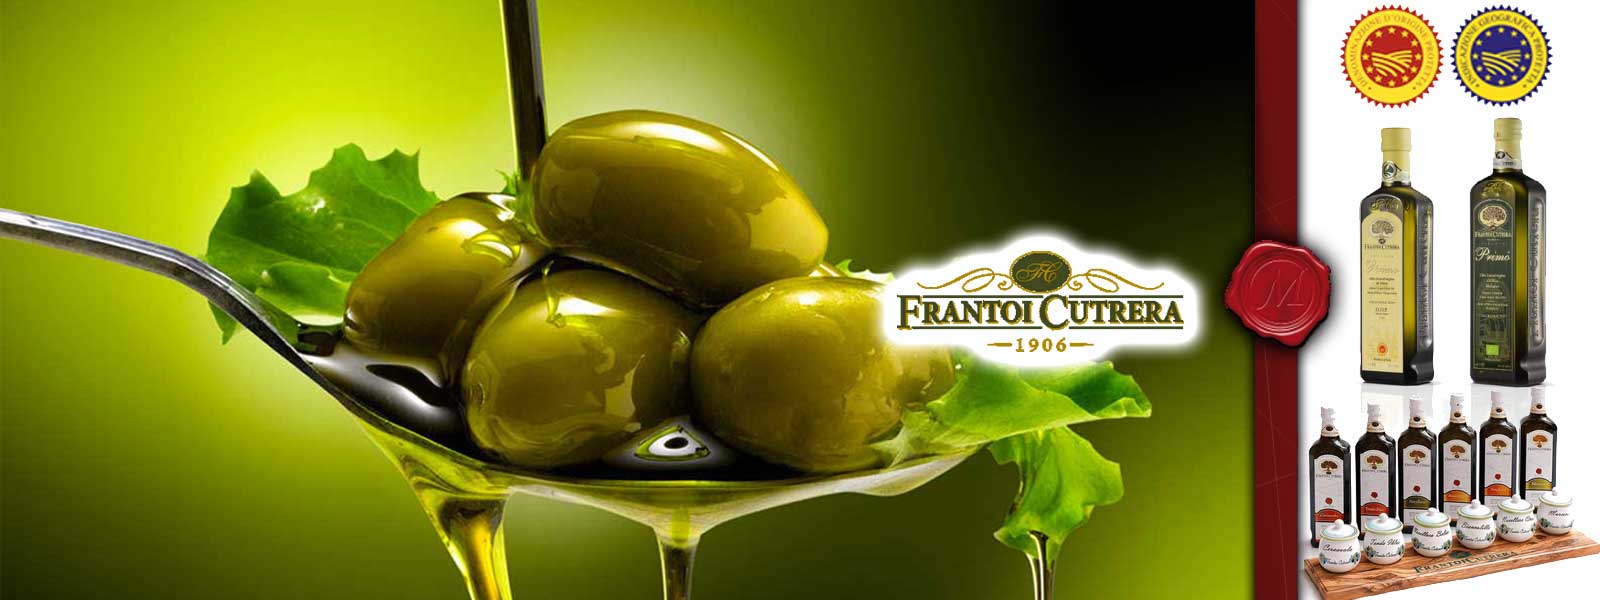 Huile d`olive de Frantoi Cutrera 